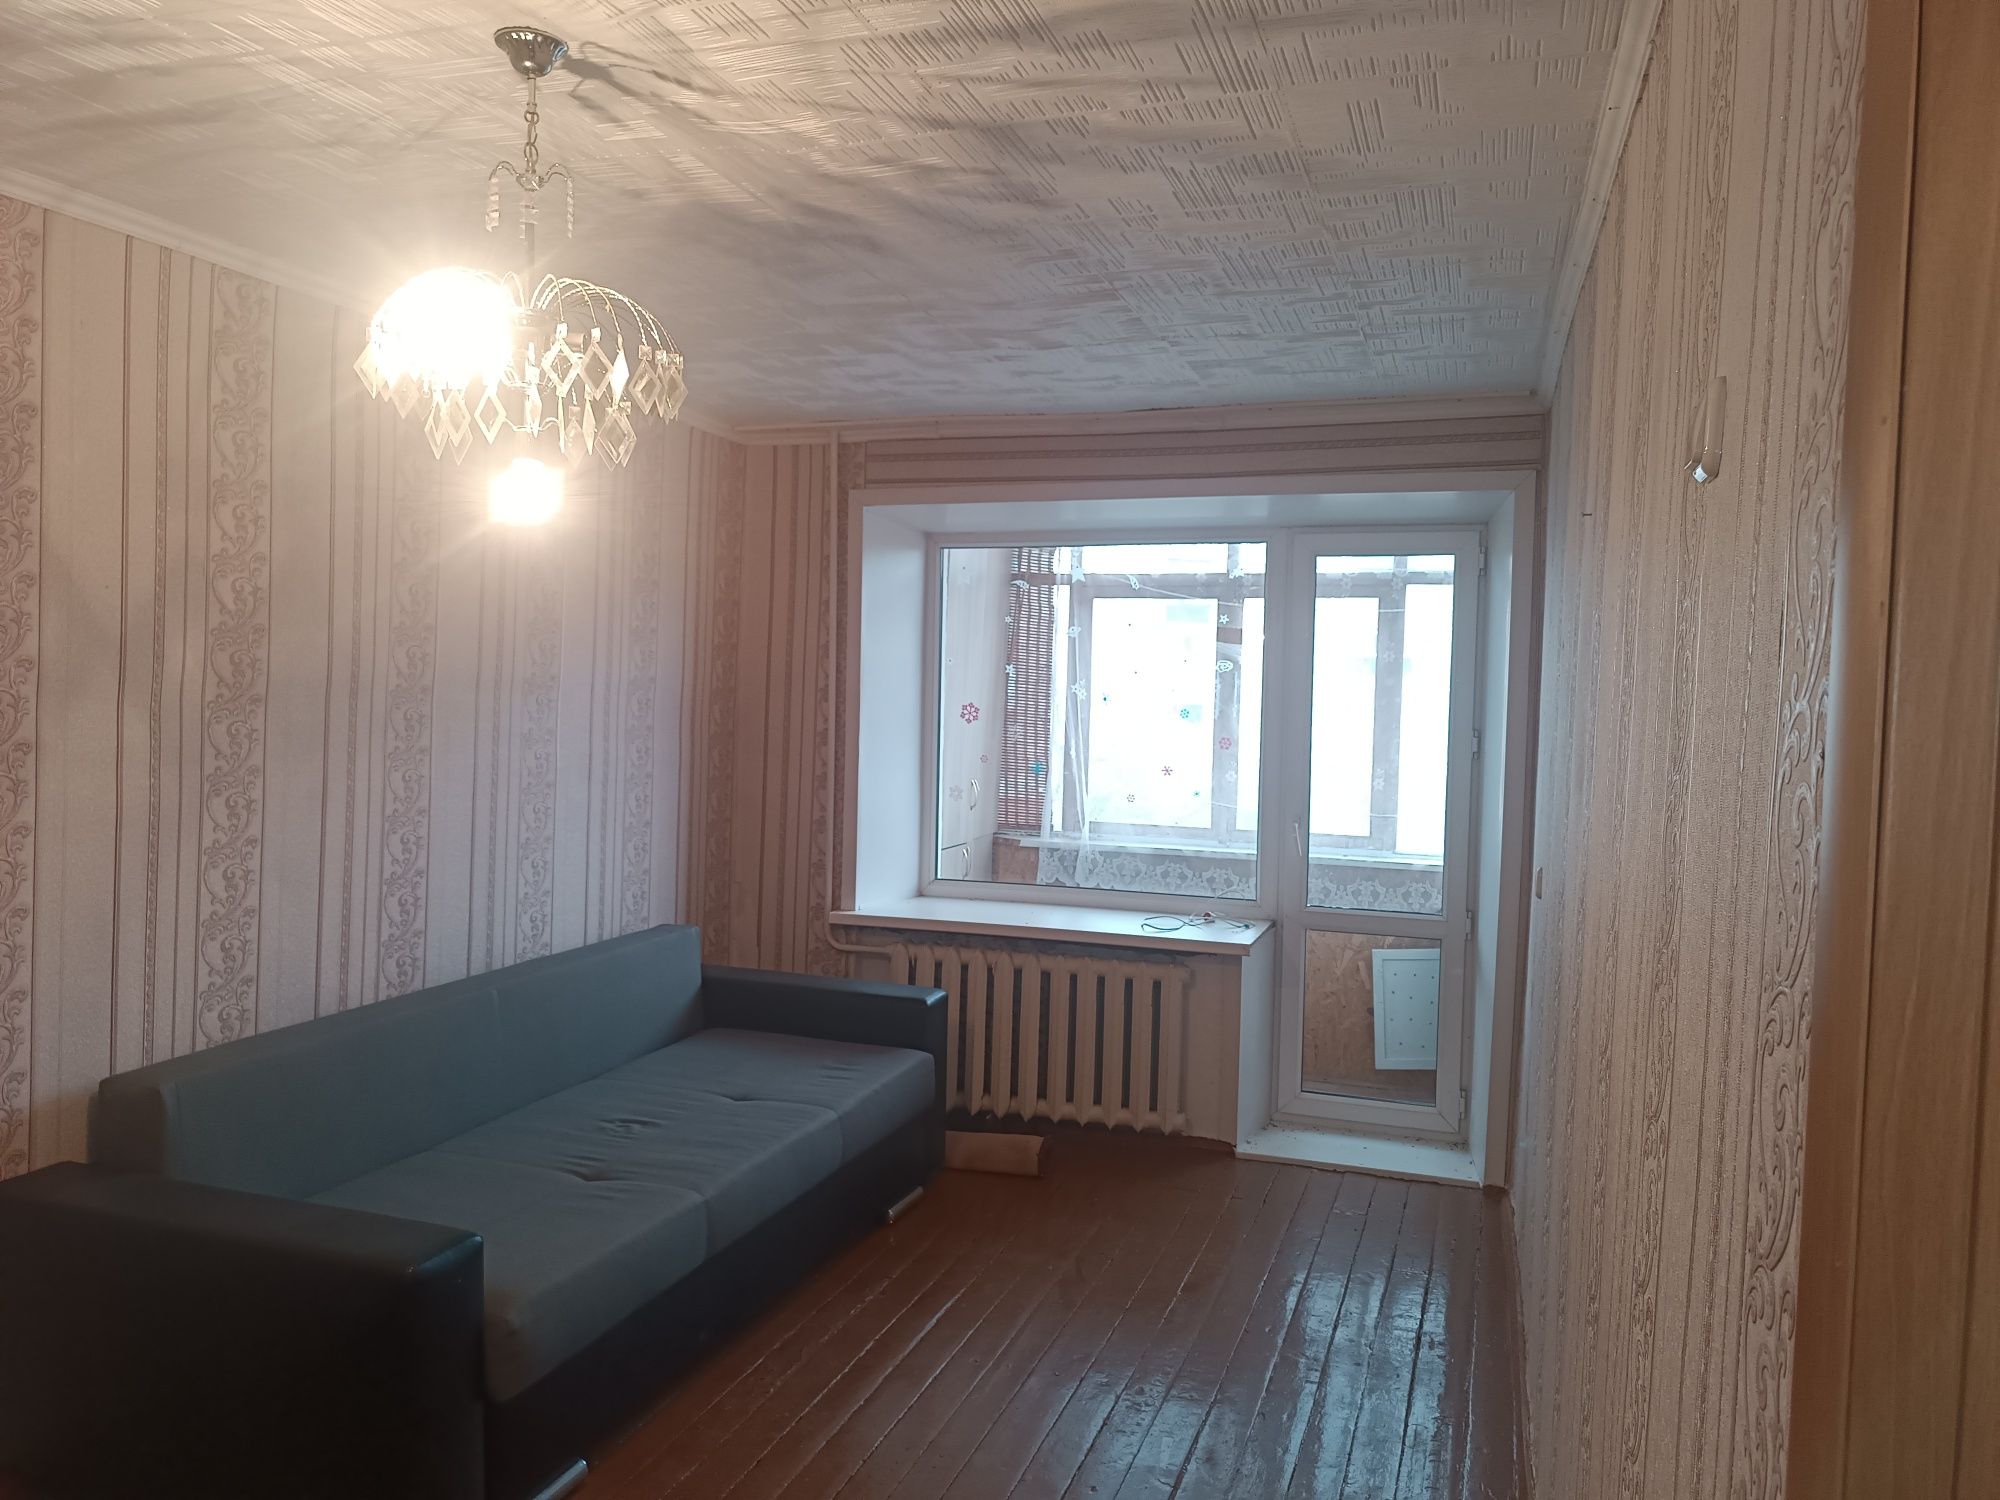 Продам однокомнатную квартиру г.Лисаковск 2-6, балкон застеклен.